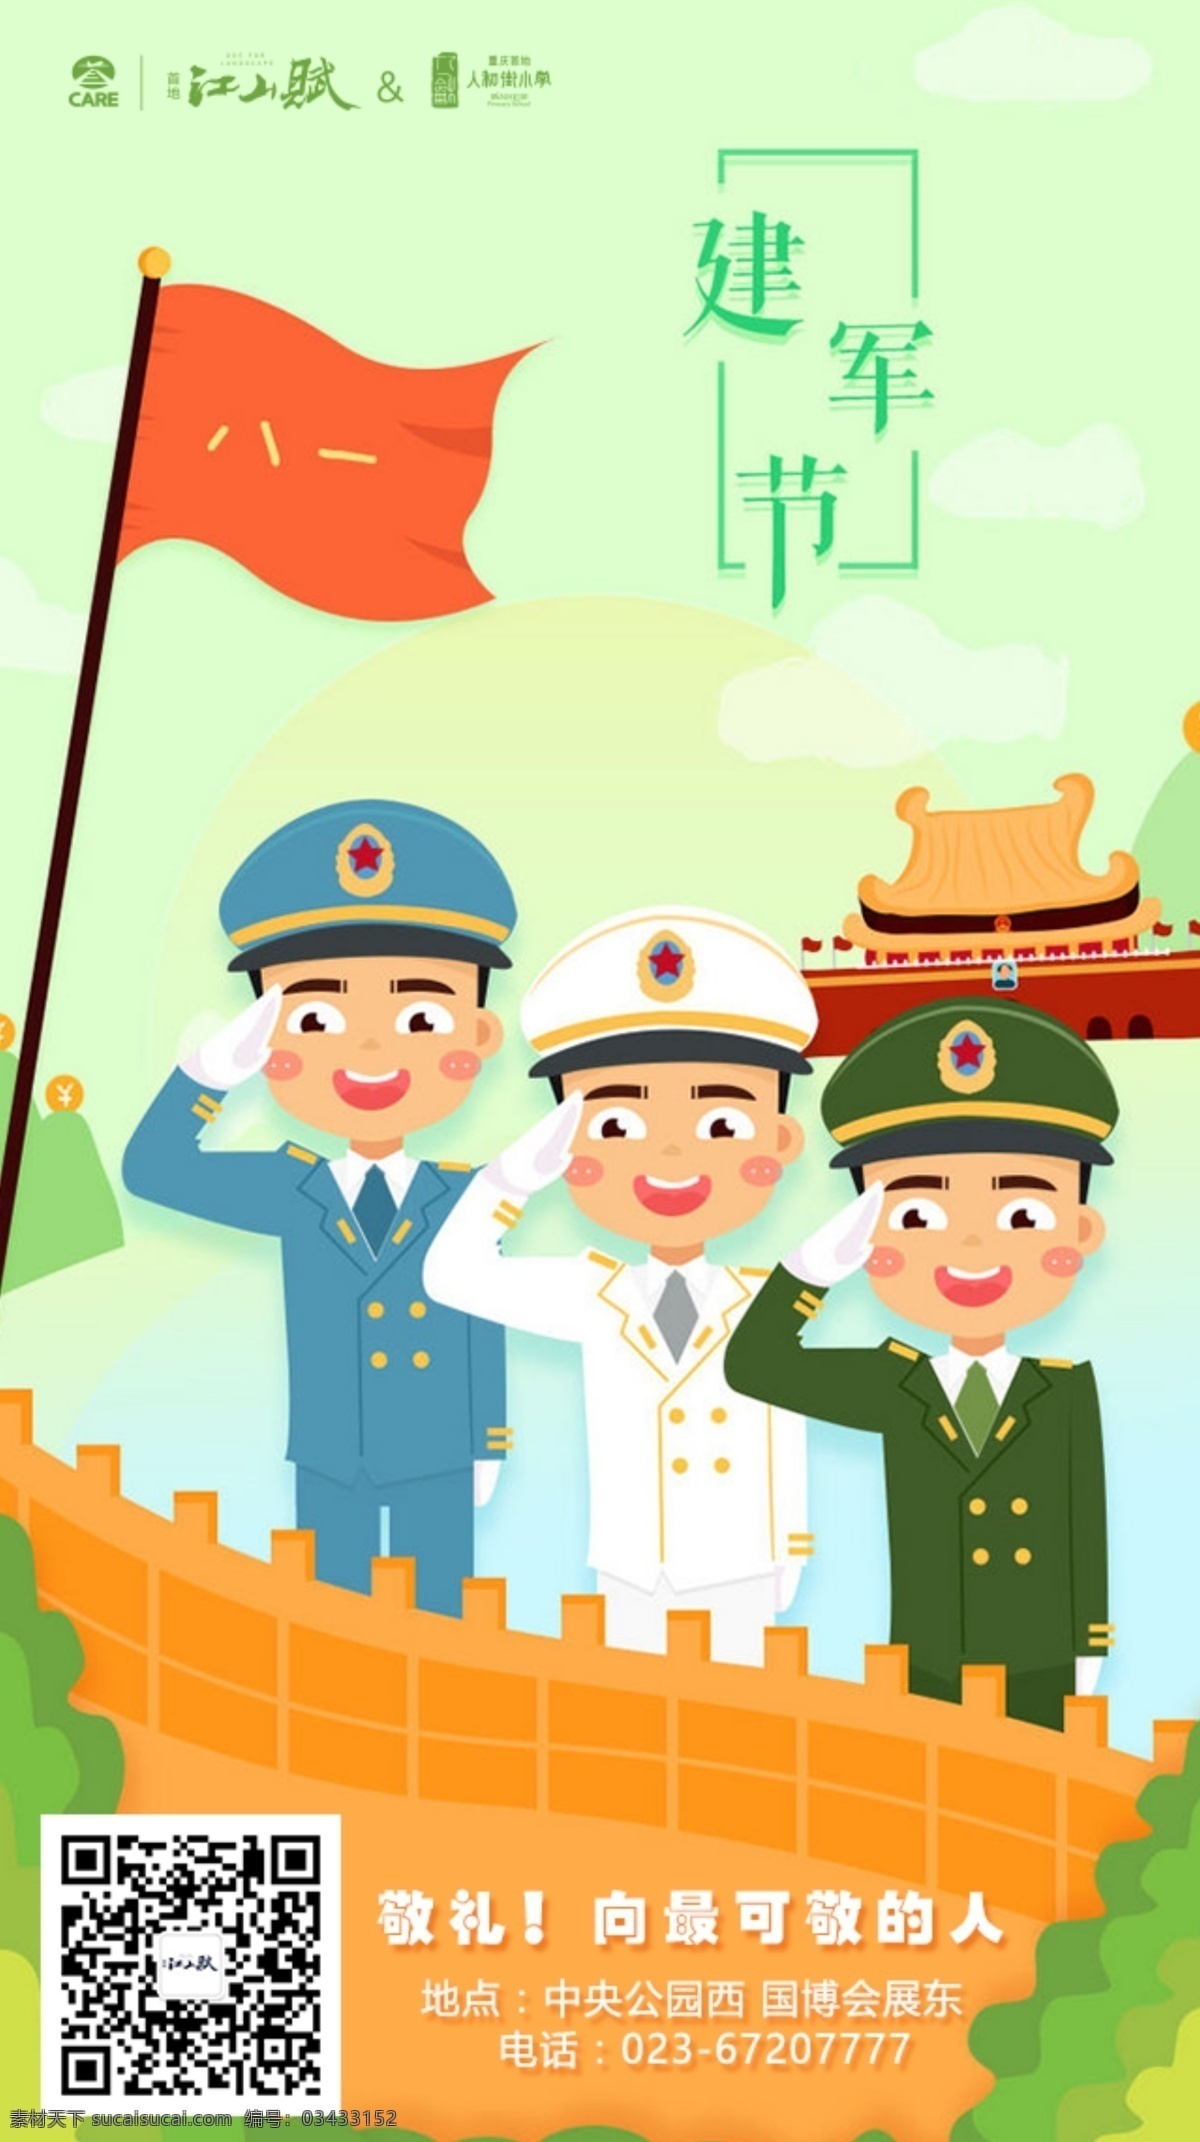 八一建军节 建军节 军人 中国 红色 手雷 五星红旗 战士 长城 可爱的人 卡通 橙色